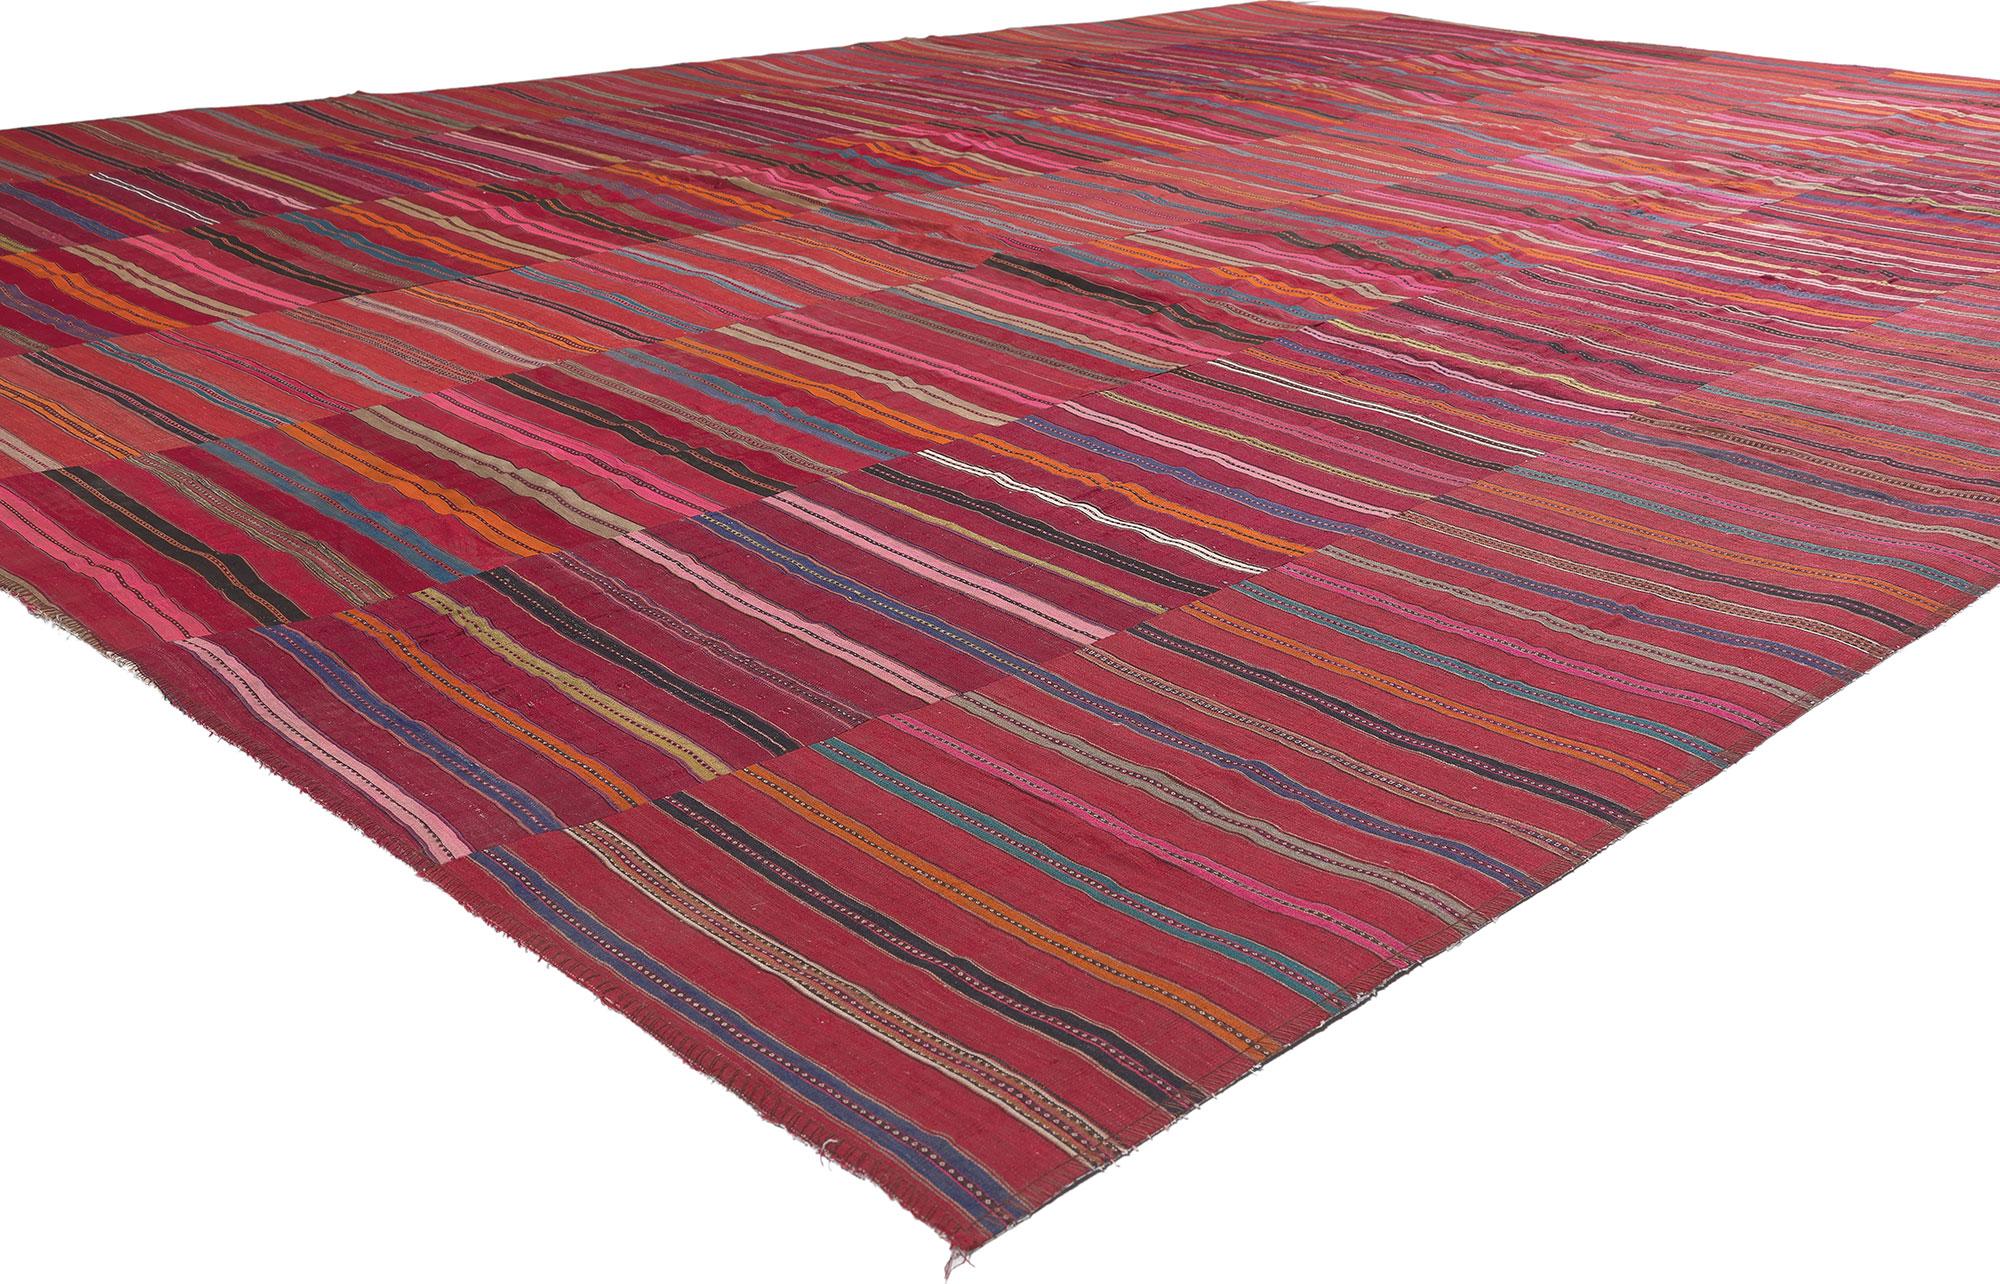 60645 Vintage Turkish Striped Kilim Rug, 09'05 x 13'00.
Ce tapis kilim turc vintage en laine, tissé à la main, allie le charme des intempéries à la beauté sauvage et à la sensibilité rustique. Le design rayé et les couleurs vives tissées dans cette